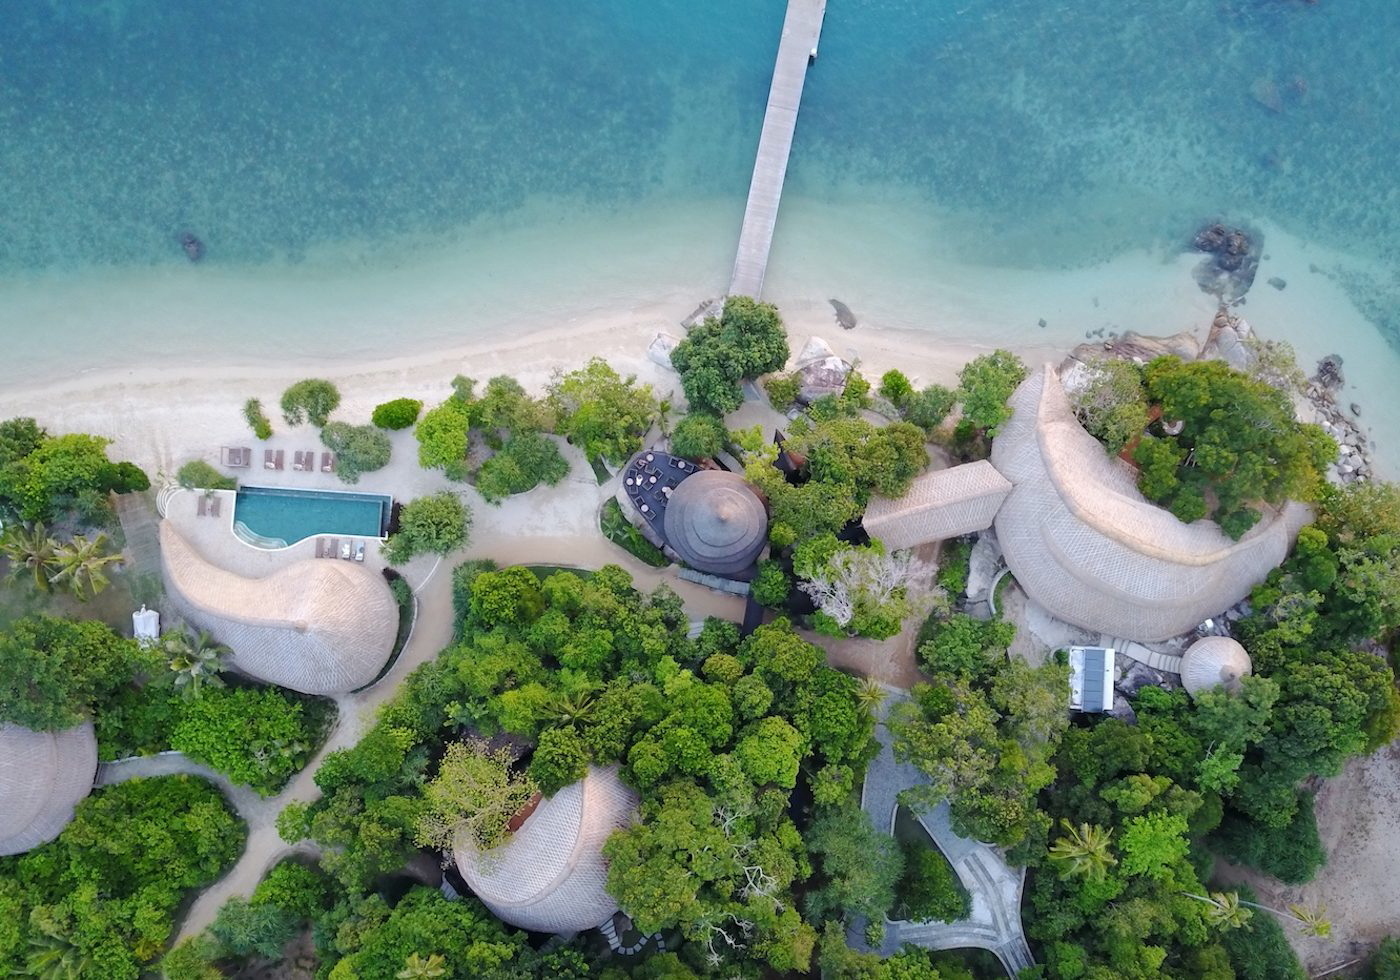 Cempedak Private Island in Bintan Island, Riau Province, Indonesia. Click to enlarge.